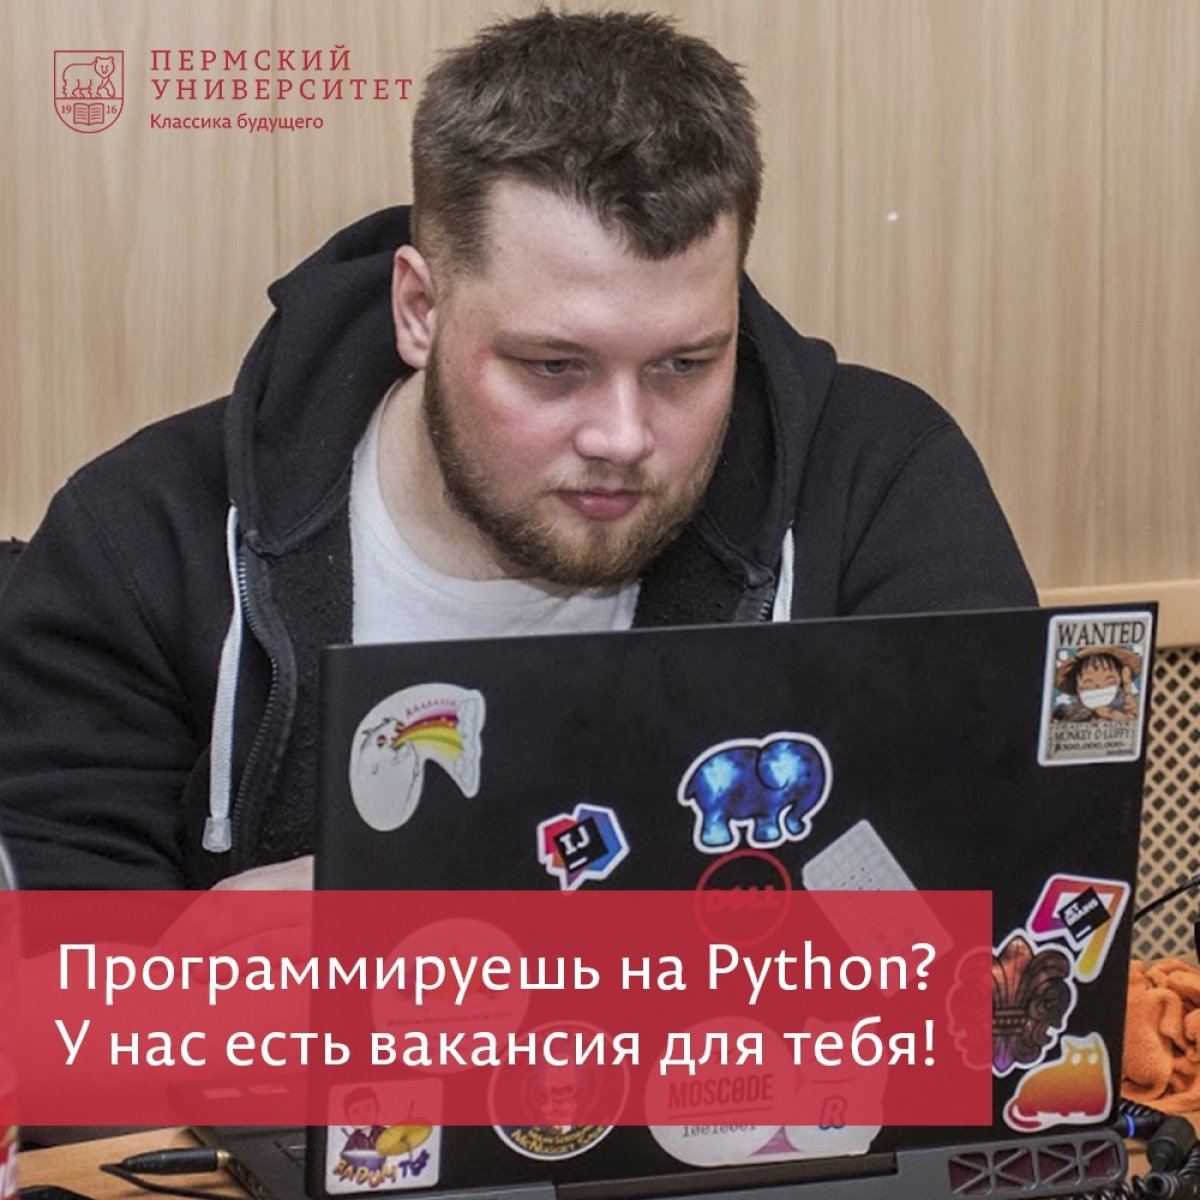 Программируешь на Python? У нас есть вакансия для тебя!